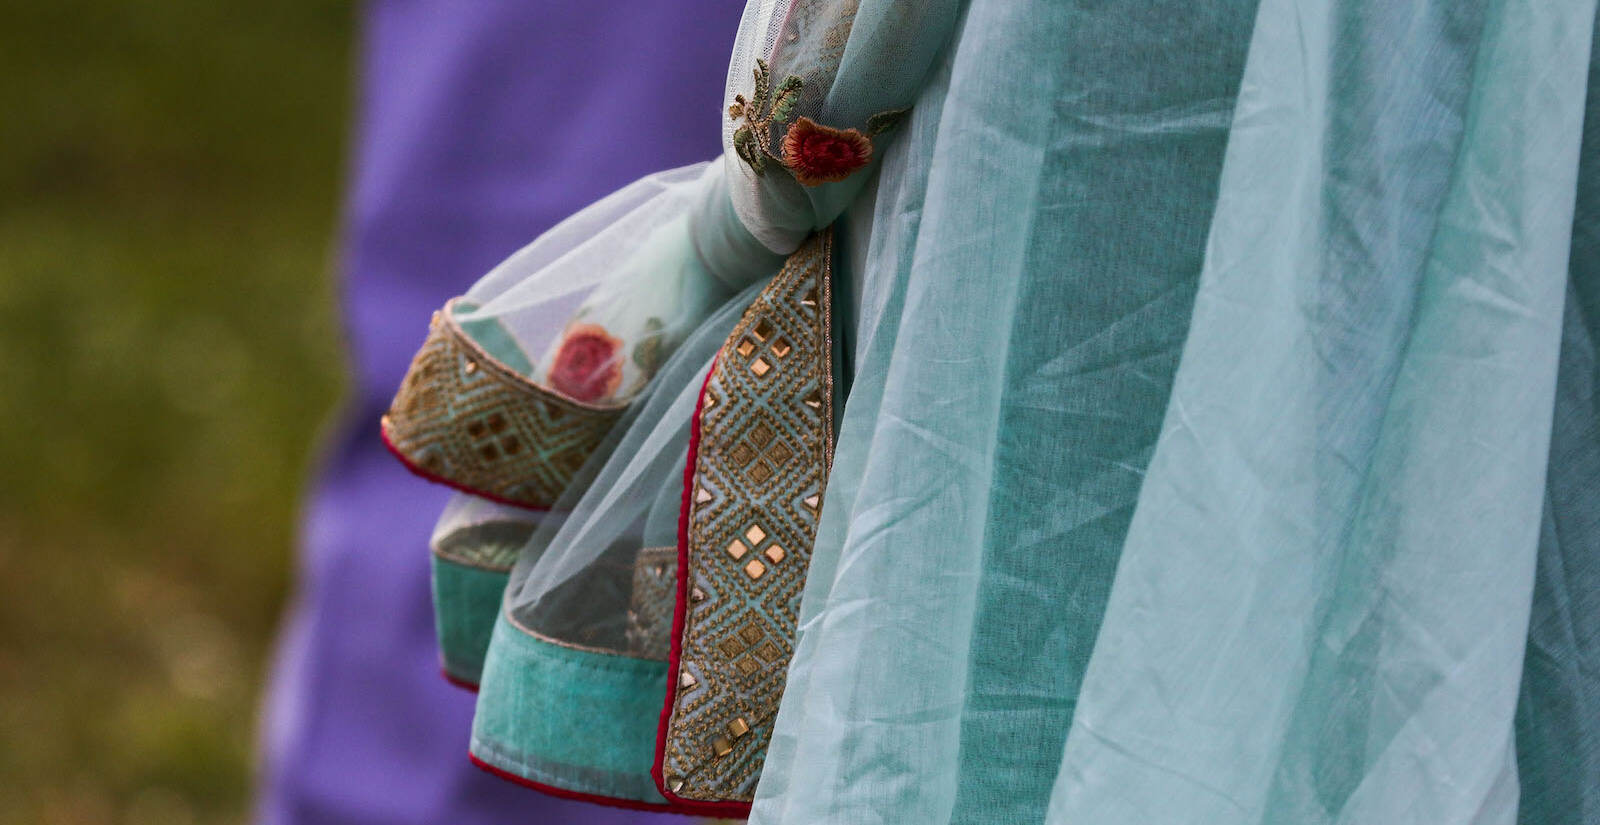 A closeup of a sari